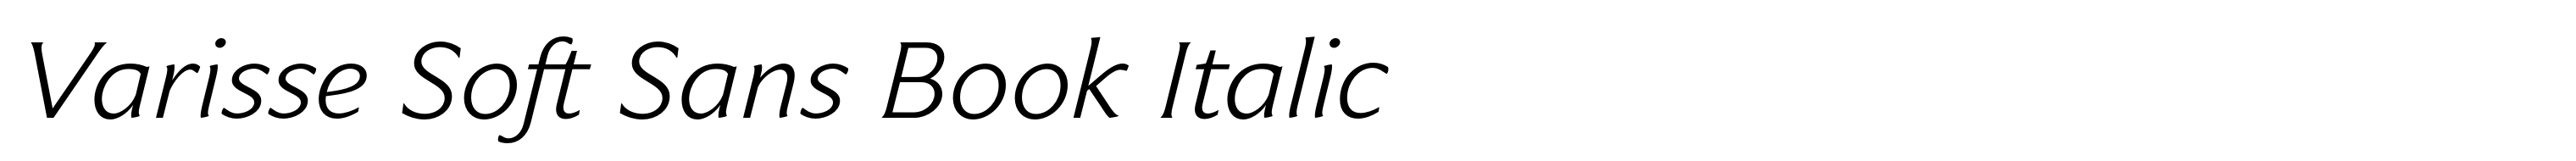 Varisse Soft Sans Book Italic